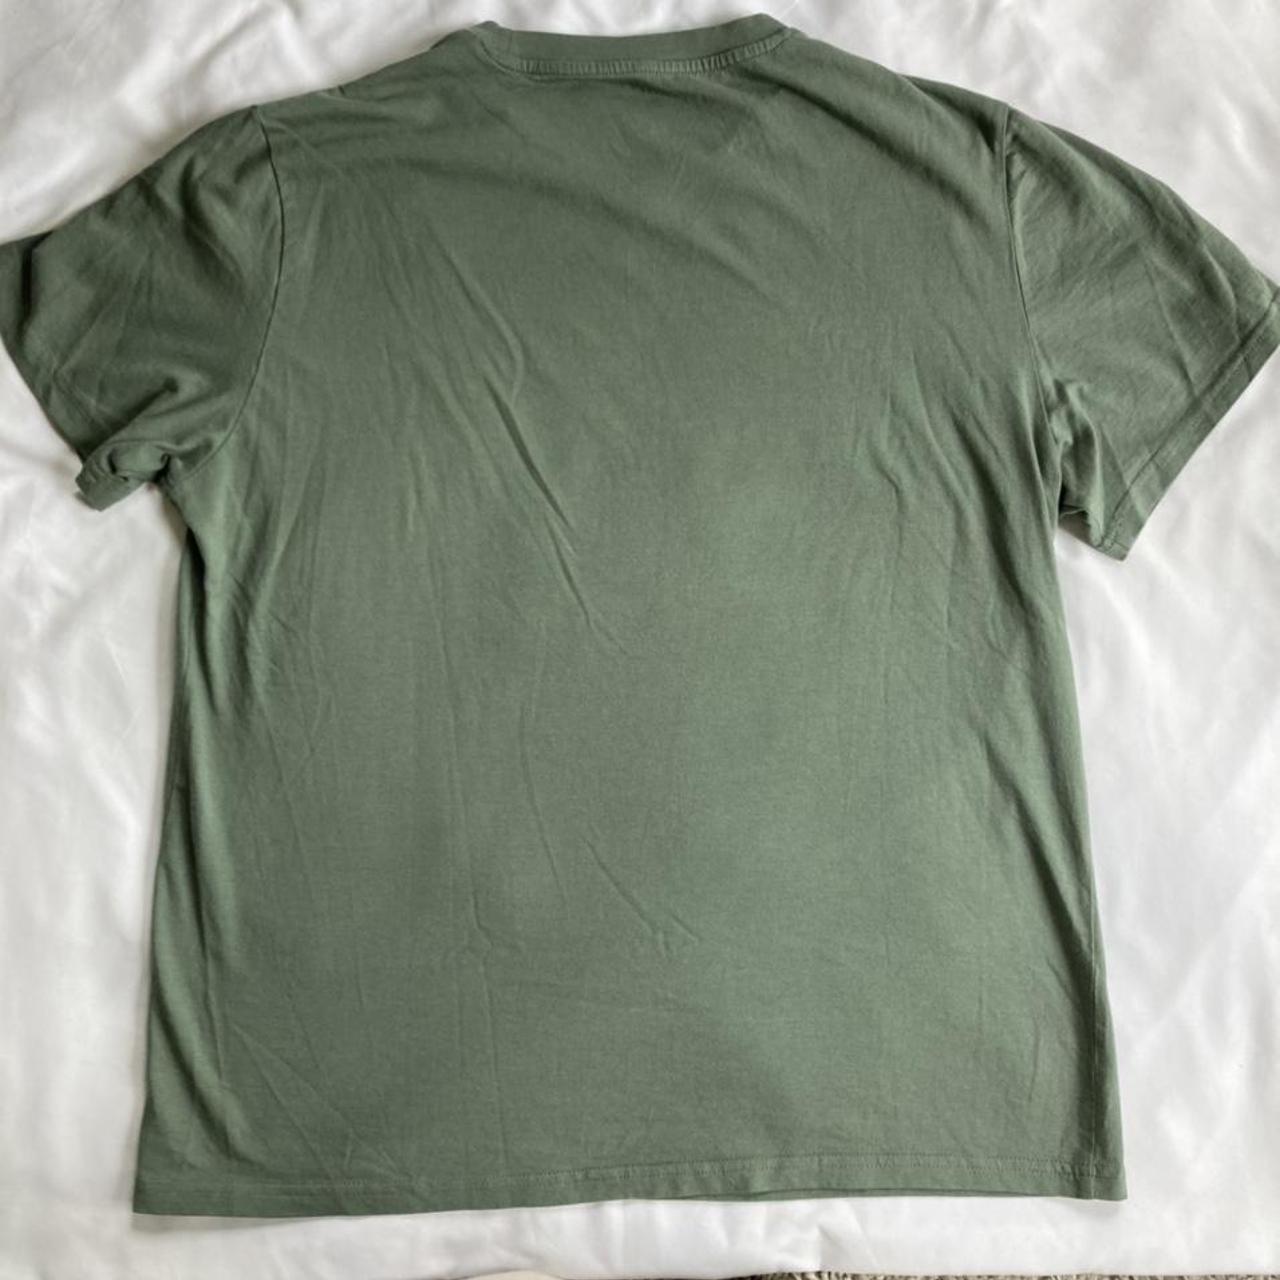 ~ H&M green t-shirt ~ 🦖 size - L, fit - quite a... - Depop